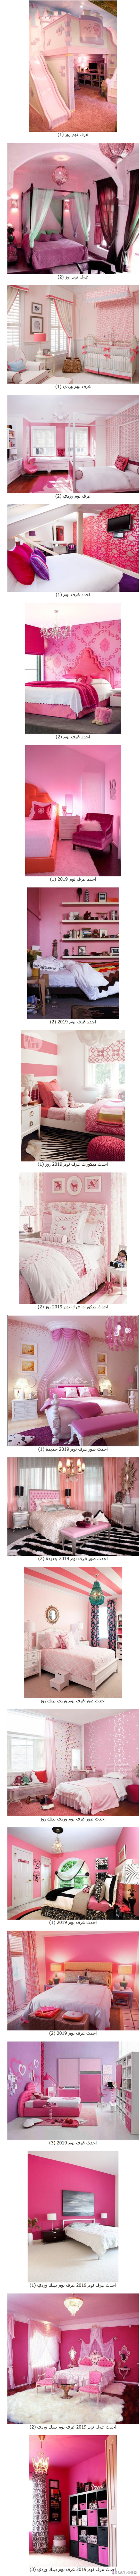 أجمل غرف نوم باللون الوردي , غرف نوم روز بمبي , غرف نوم عرائس وردية